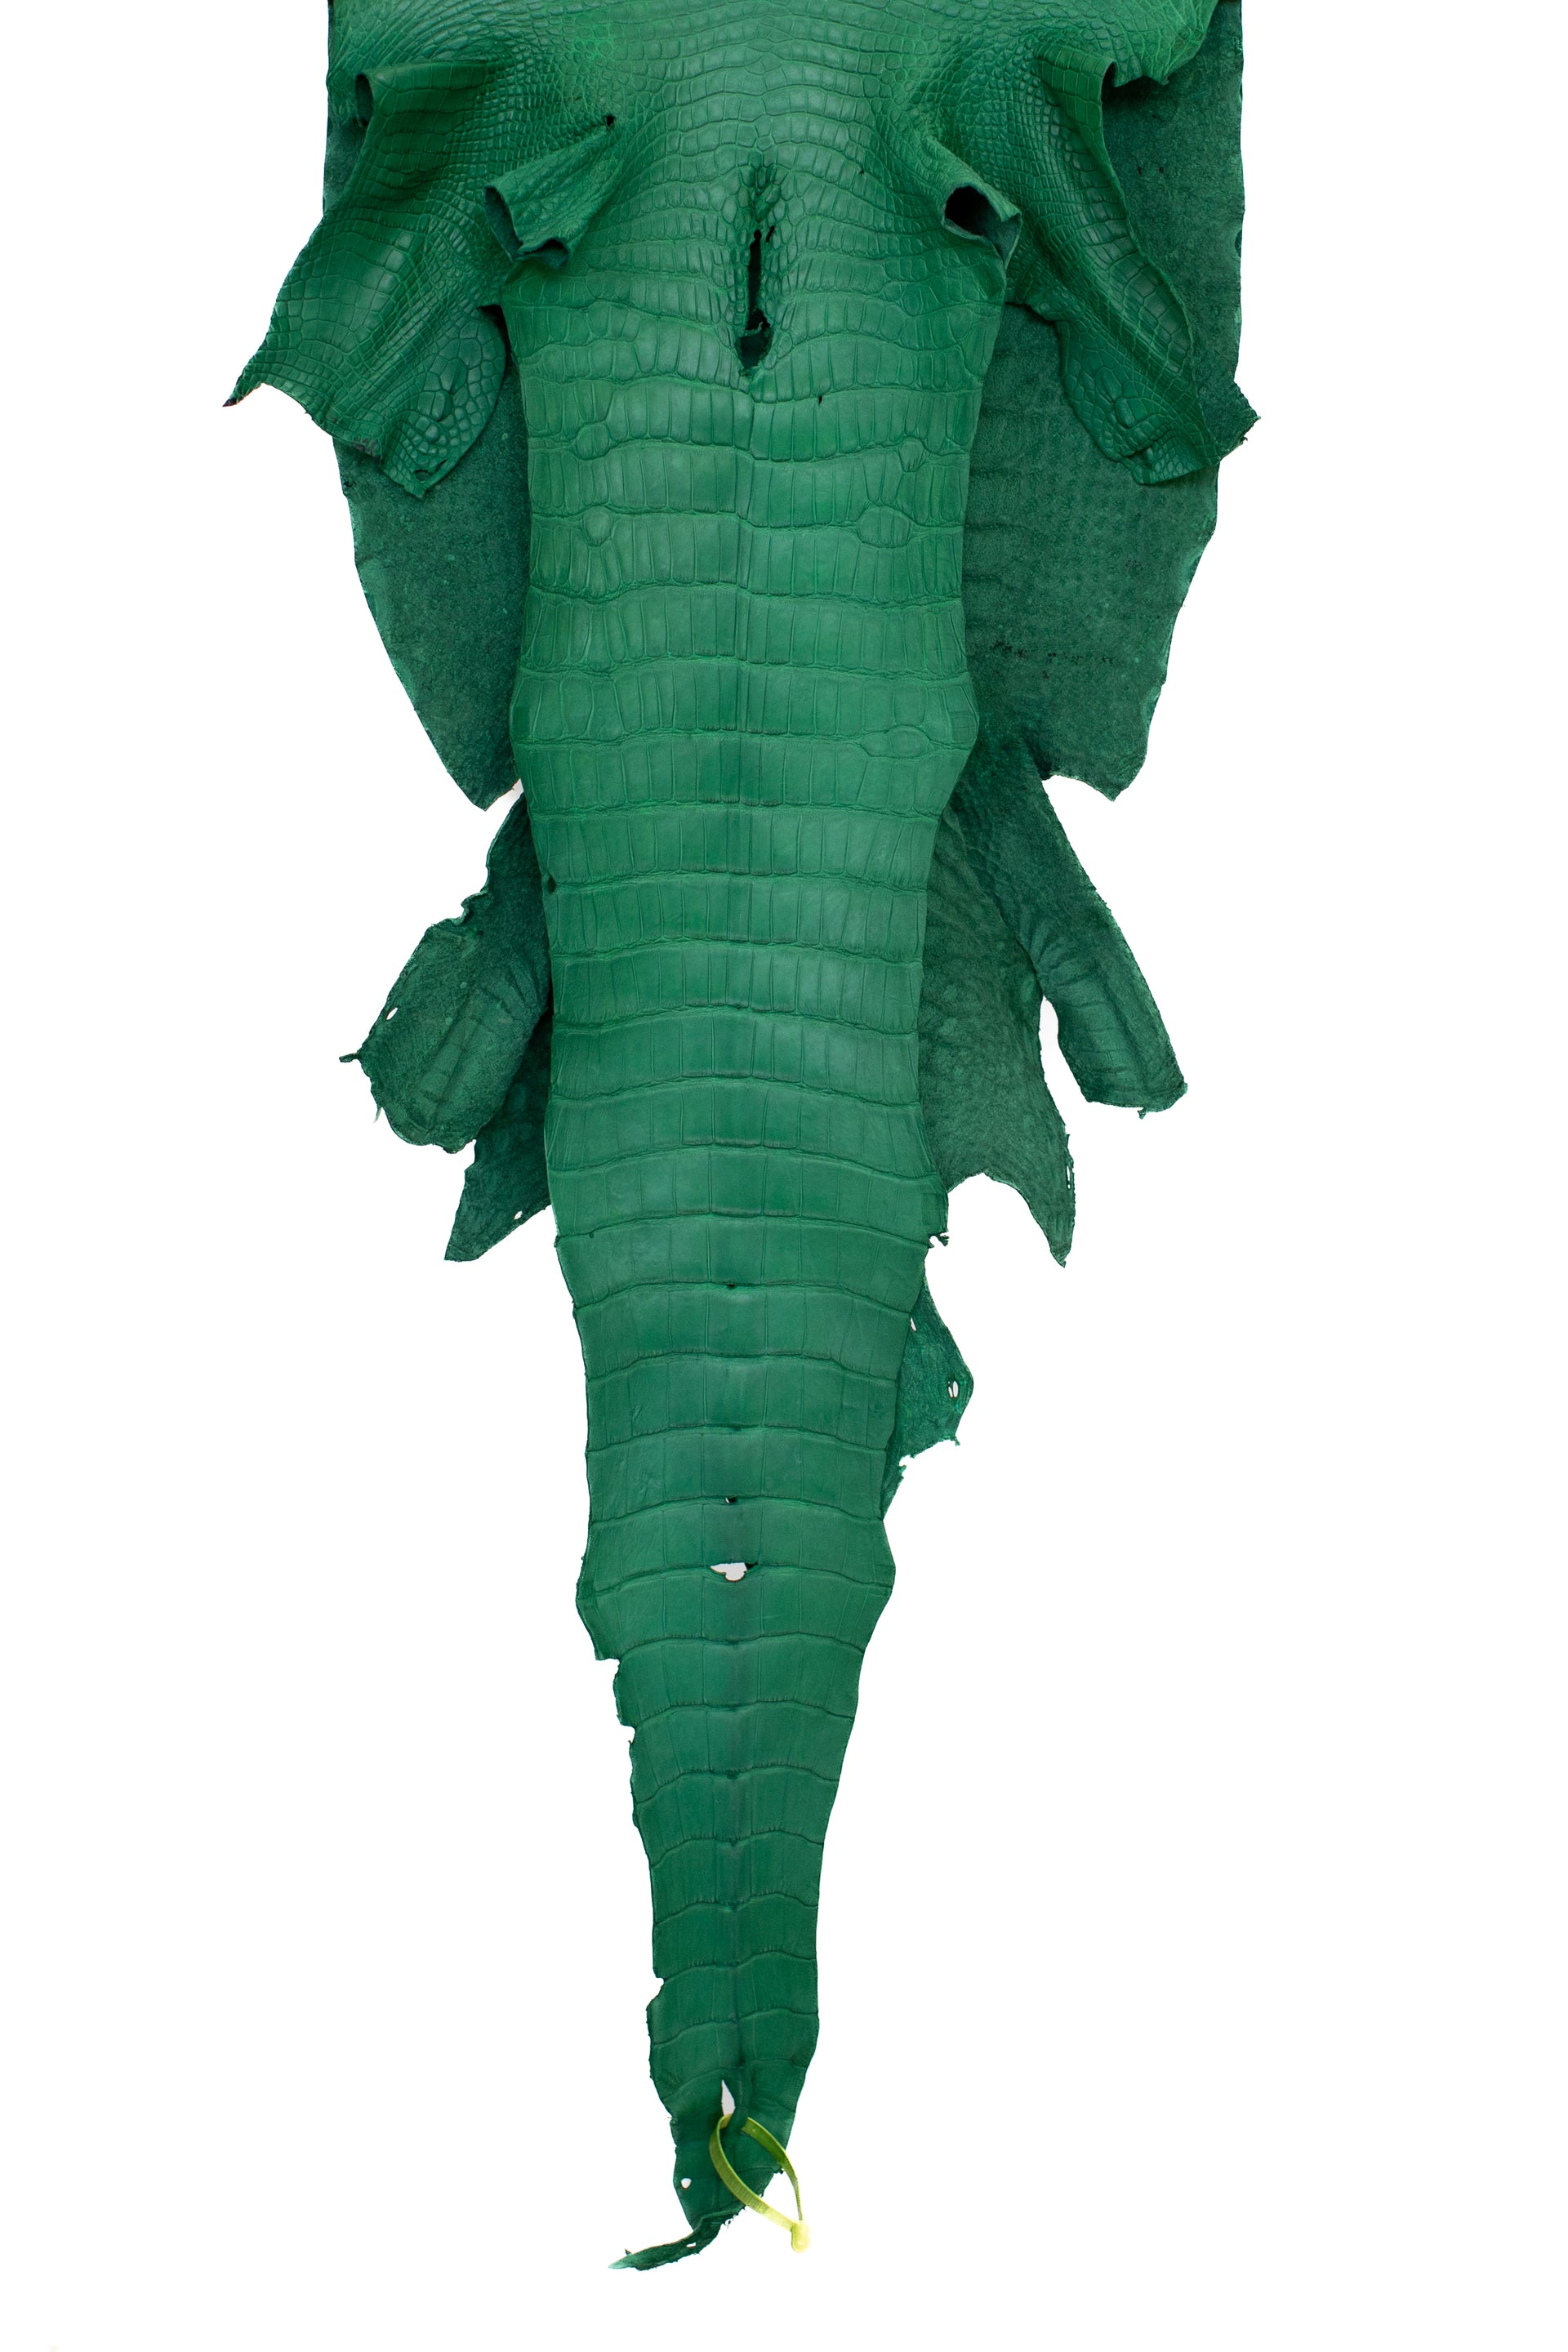 47 cm Grade 3/4 Kelly Green Matte Wild American Alligator Leather - Tag: LA22-0021468